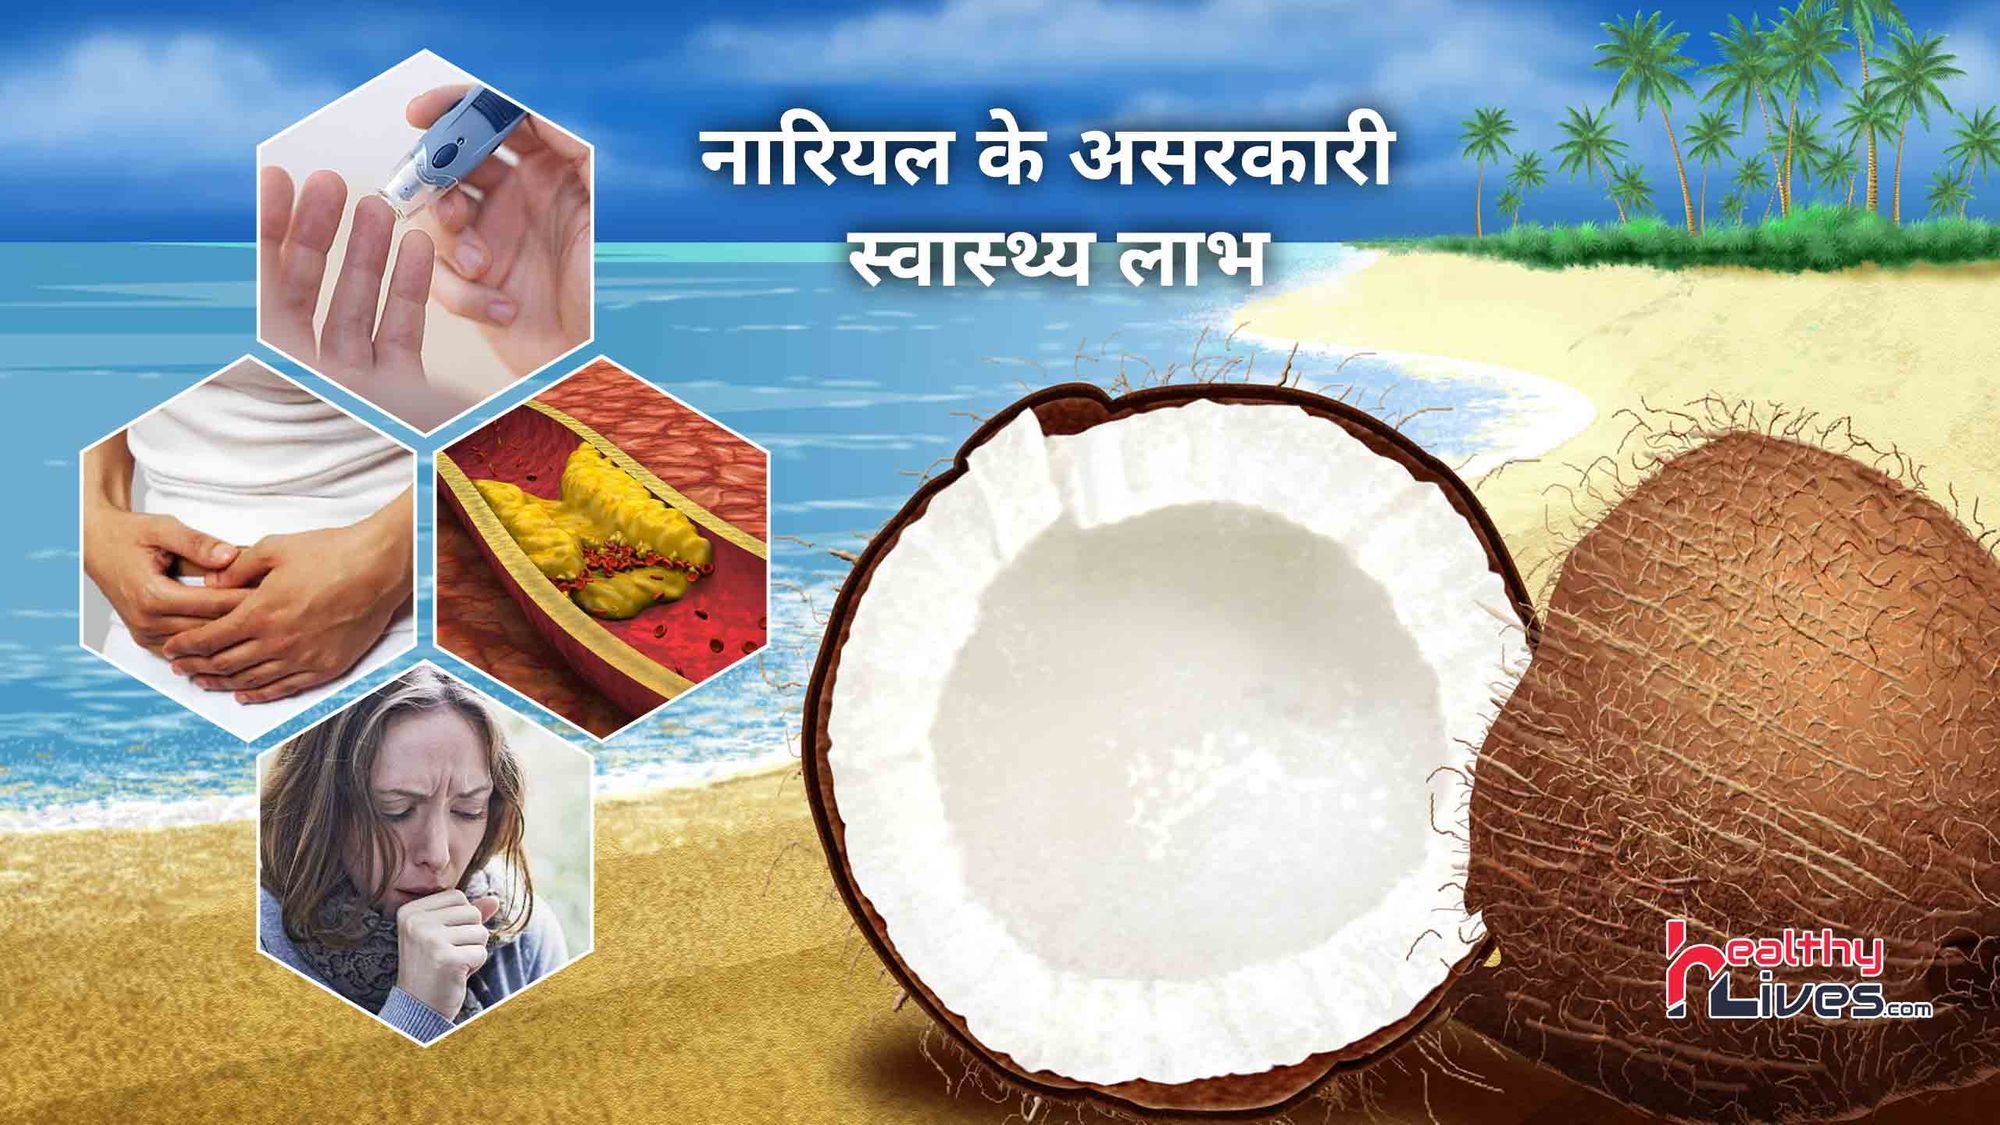 Benefits Of Coconut: नारियल में होते है कई चमत्कारी गुण, जाने इसके लाभ